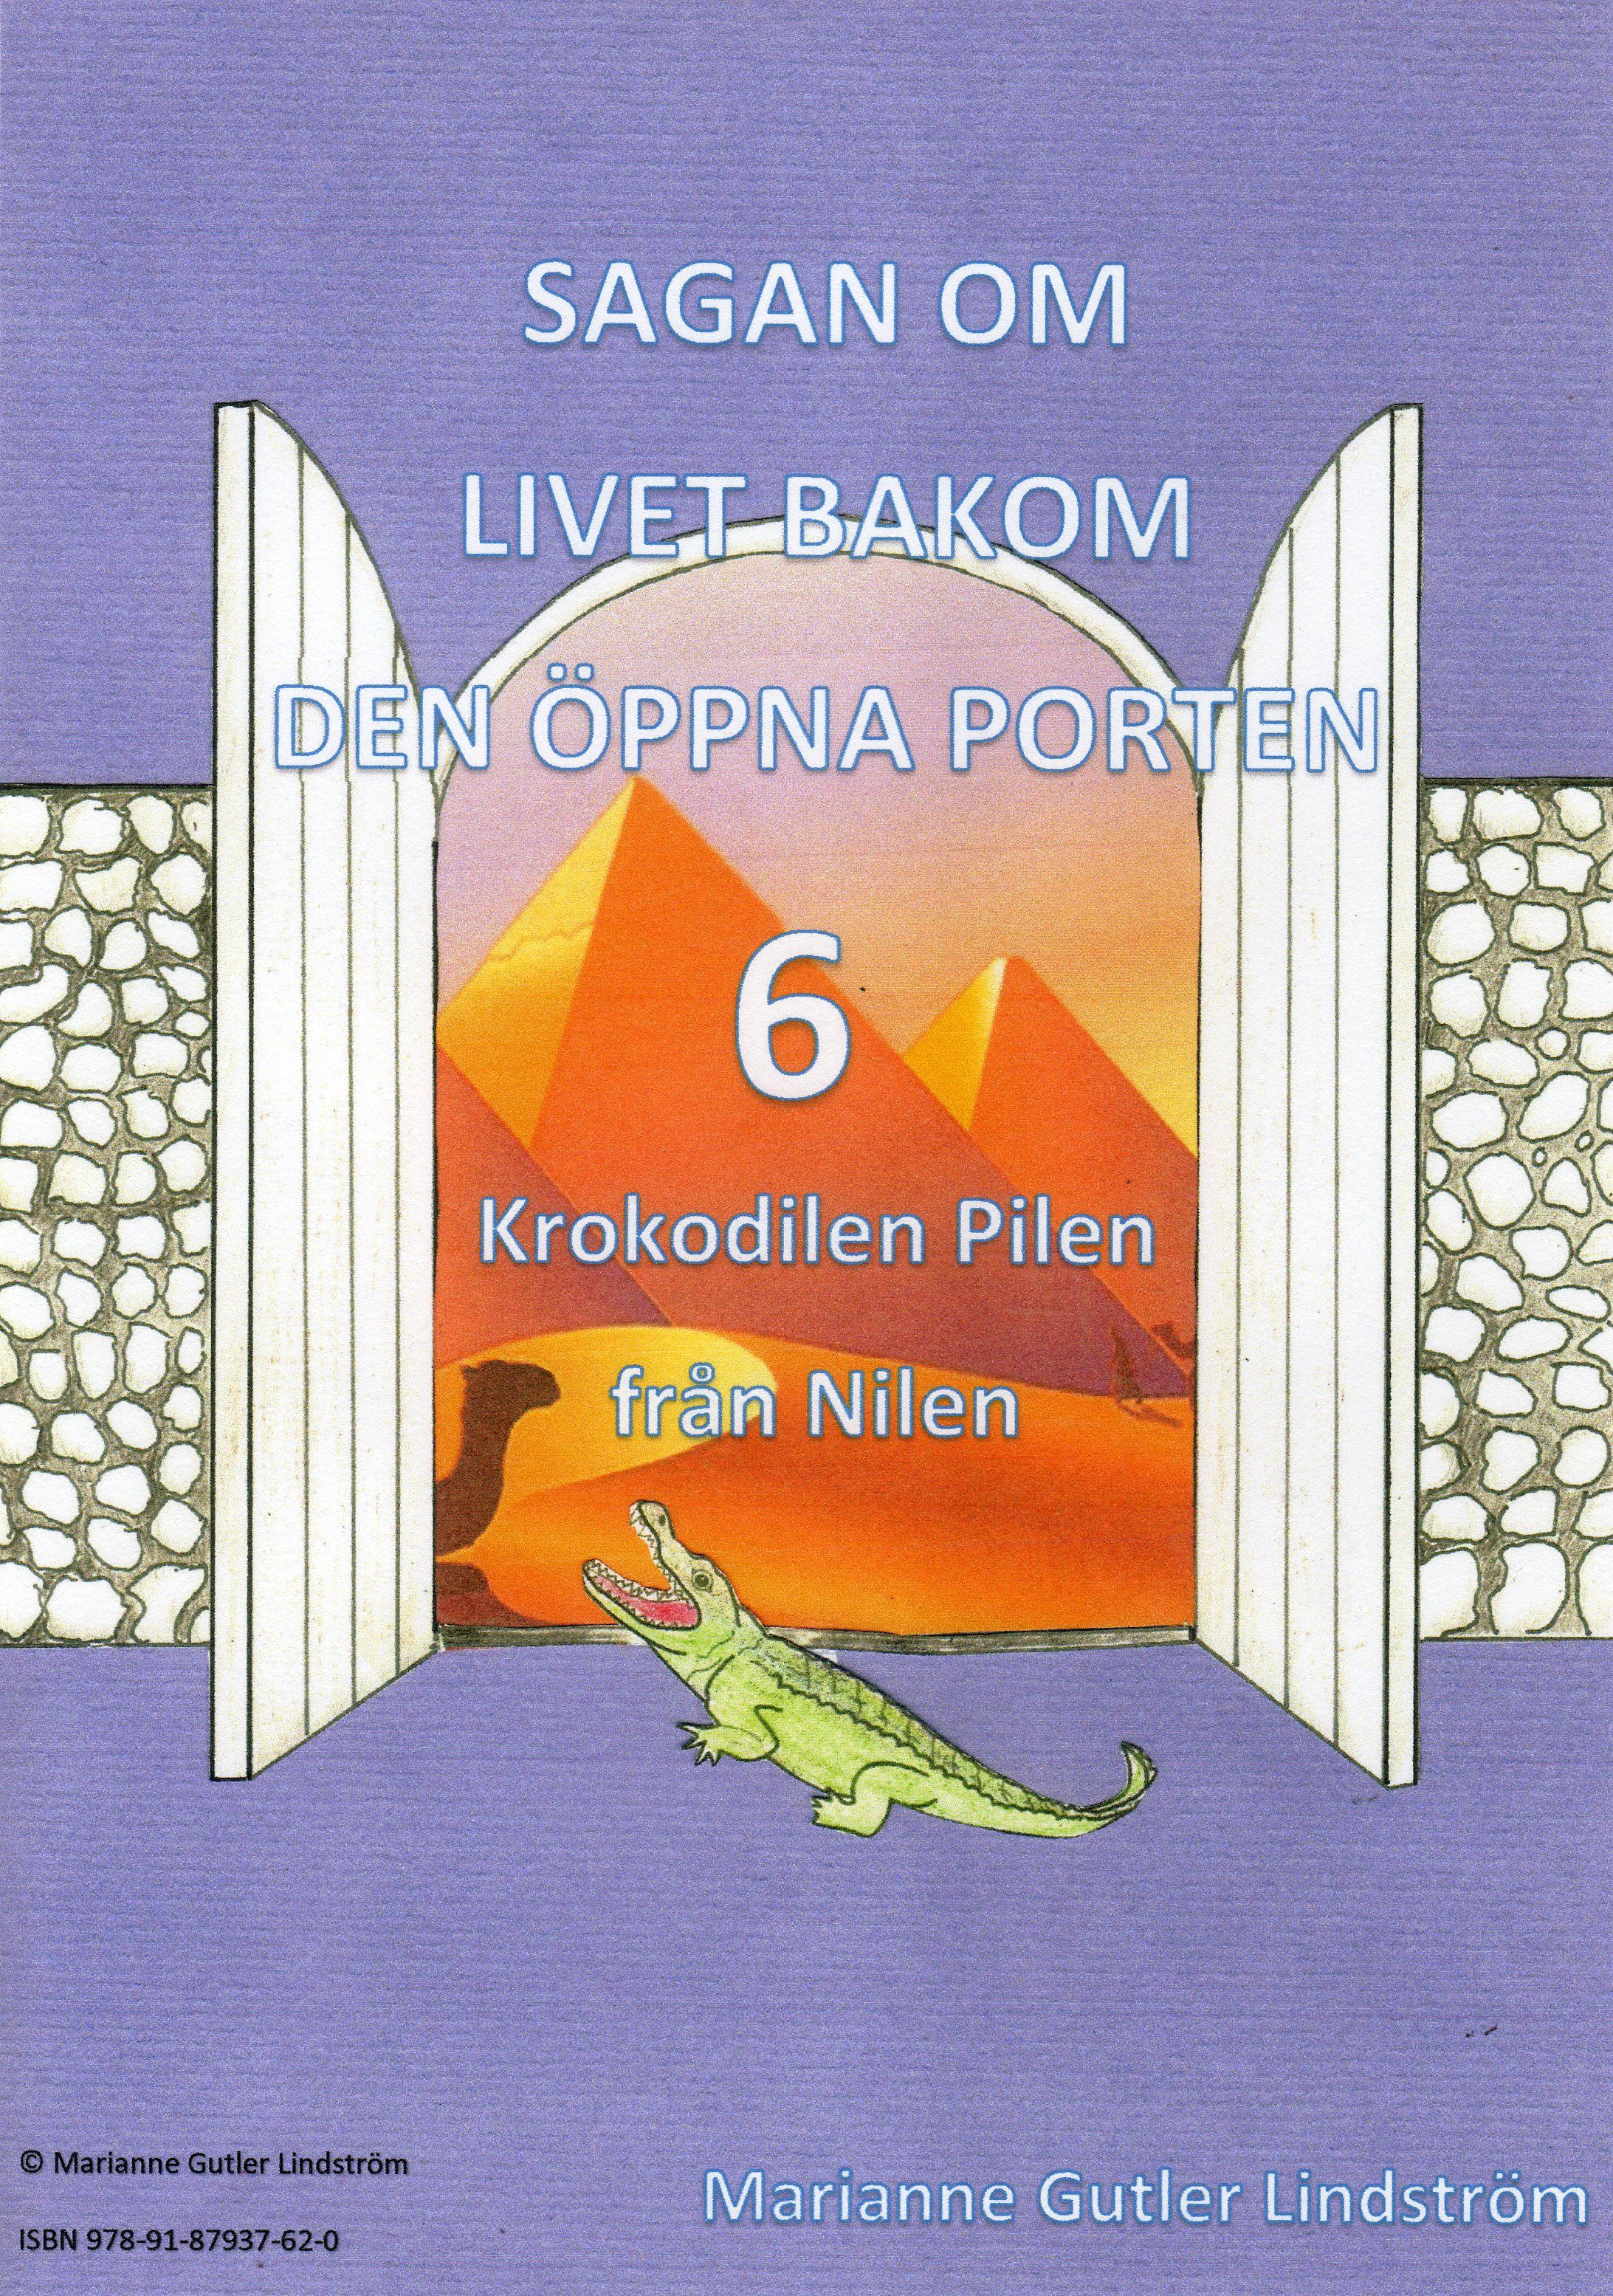 Krokodilen Pilen från Nilen, eBook by Marianne Gutler Lindström